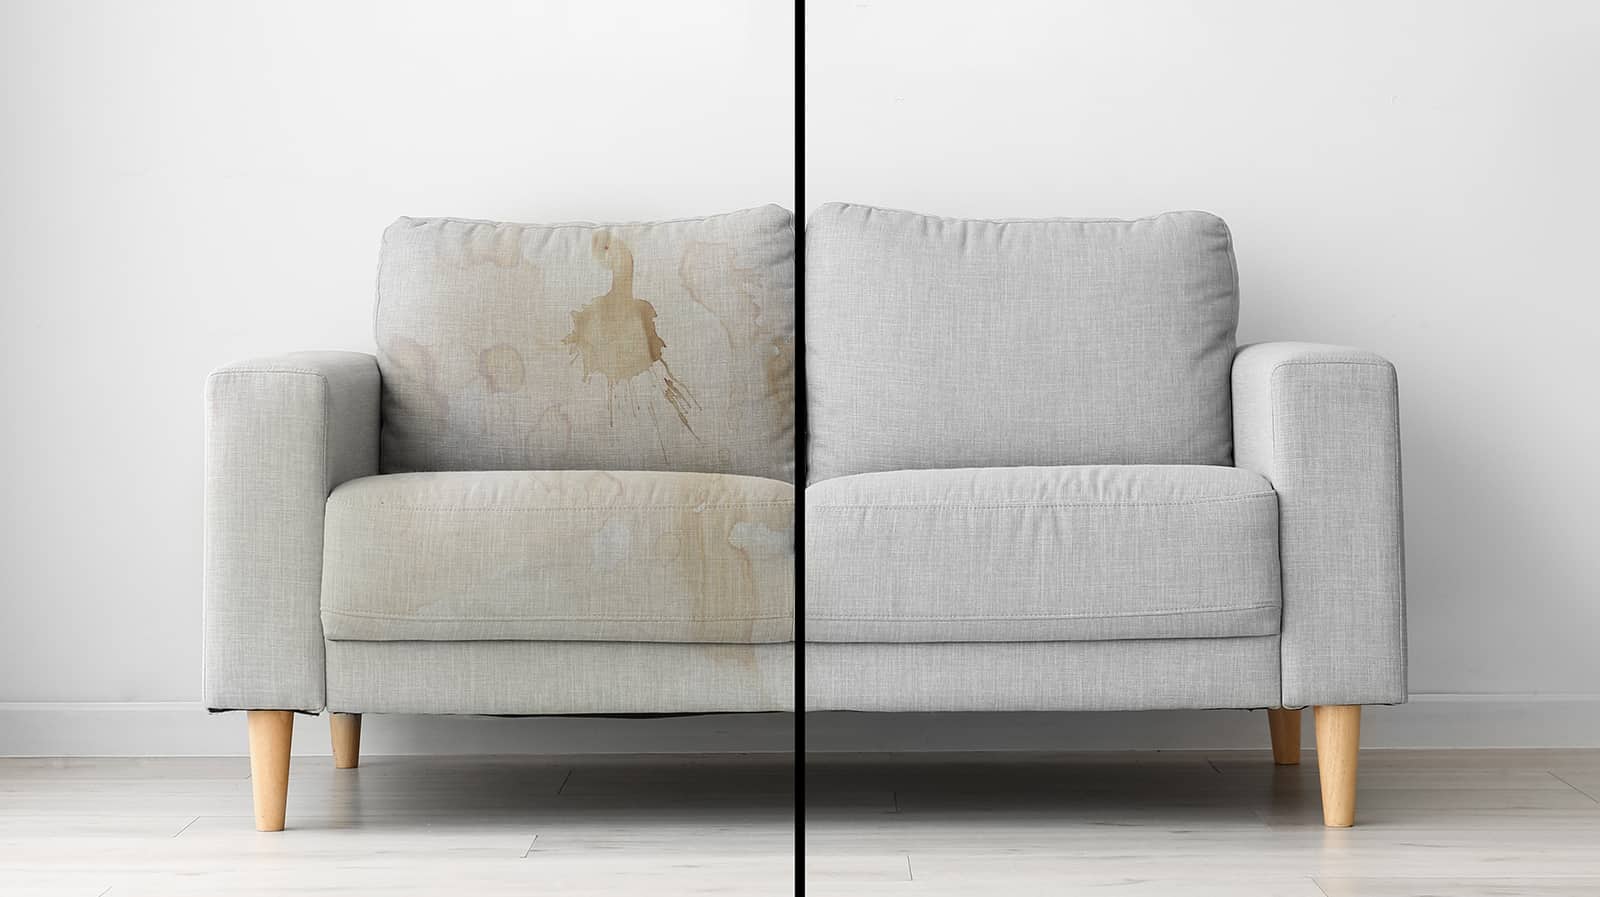 Lavaggio divani - segreti professionali per un divano perfetto